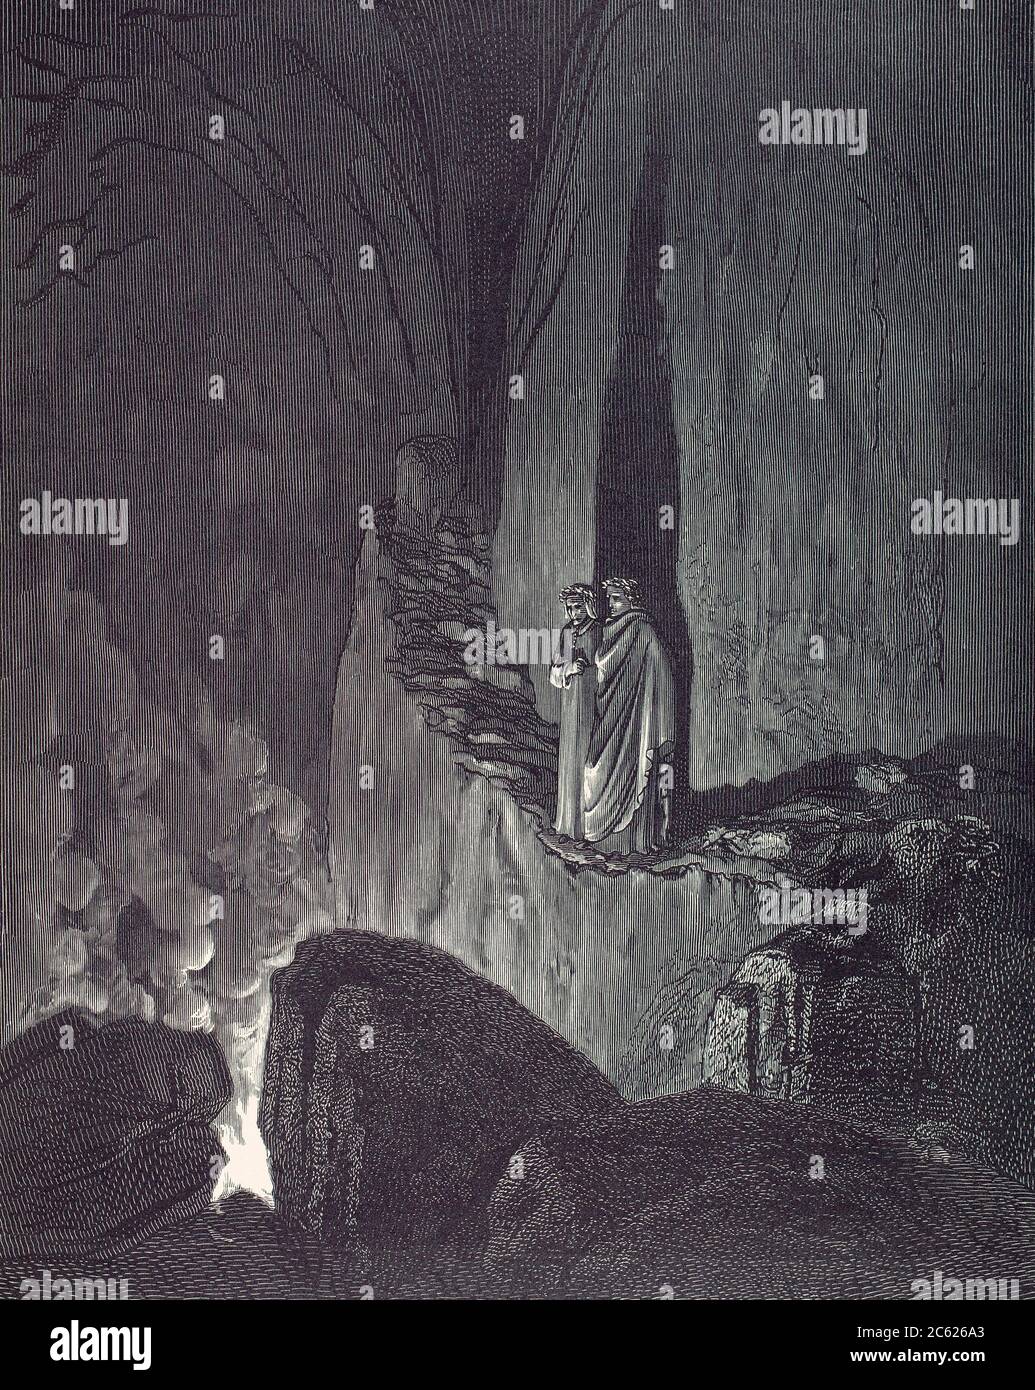 La visione dell'Inferno. Illustrazione di Gustave Dore per l’inferno di Dante Alighieri, la prima parte dell’epica trilogia narrativa la Divina Commedia. Foto Stock